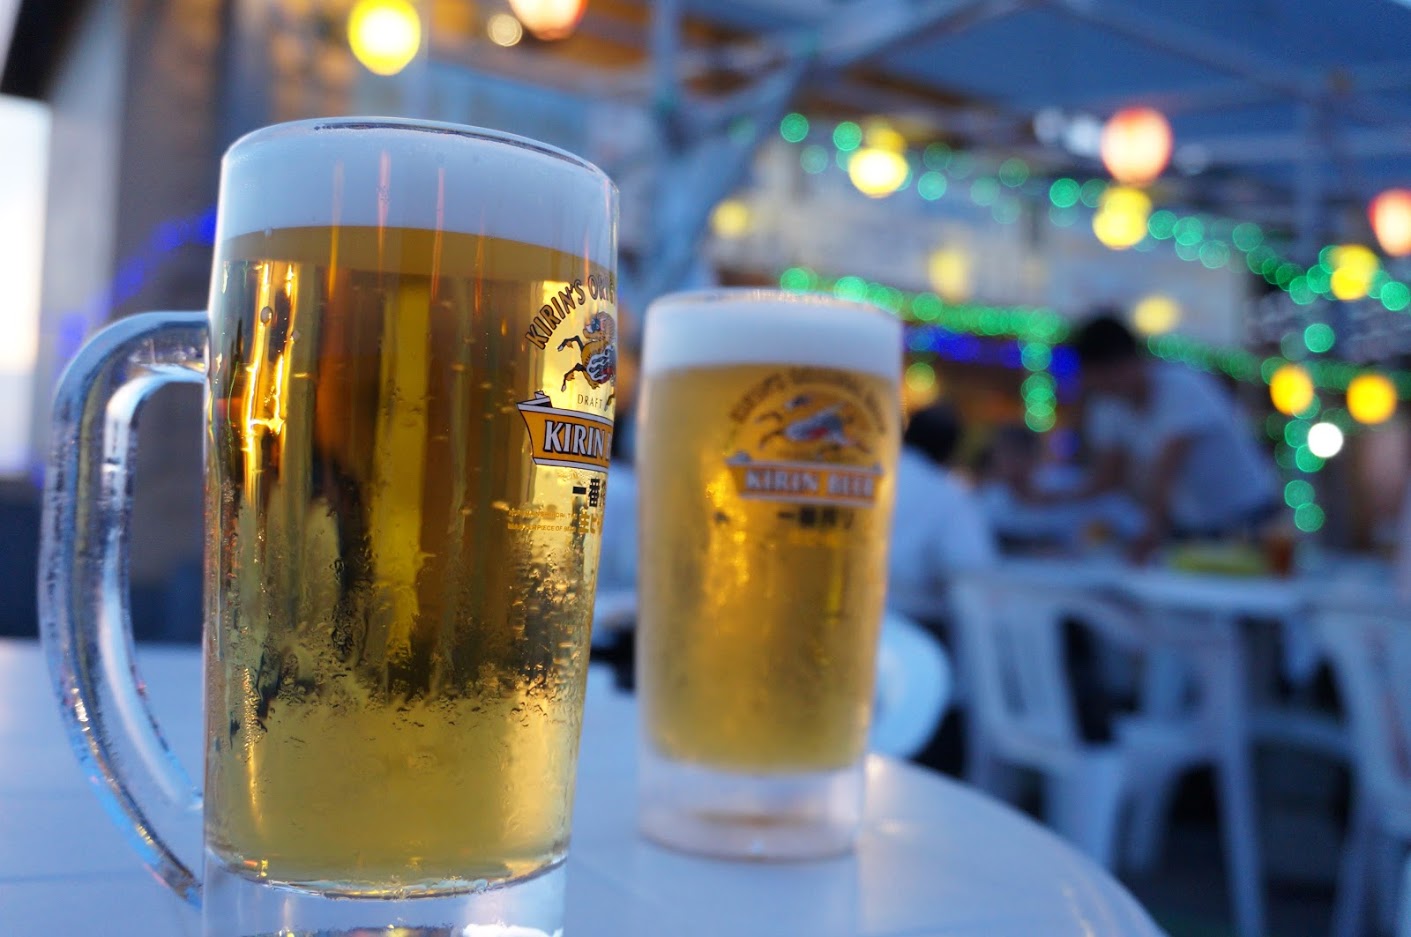 潮風を浴びながらビールを楽しむ 東京湾フェリーの納涼船が今年も開催 きみつネット